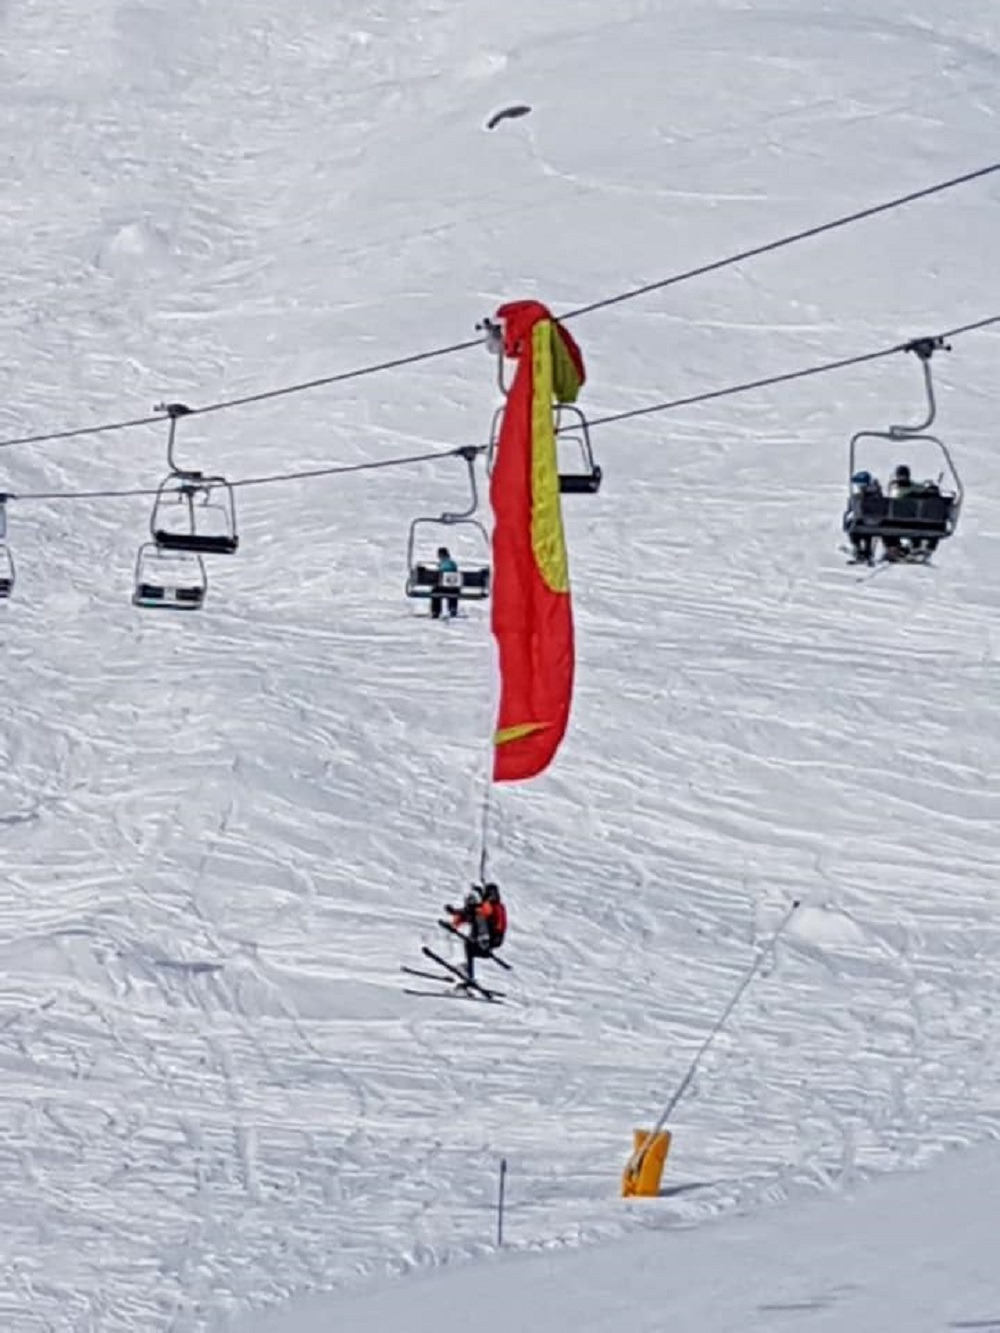 La voile des deux parapentiste a percuté un câble, avant de terminer sa course dans un pylône du domaine skiable de Lauchernalp, dans le Haut-Valais.